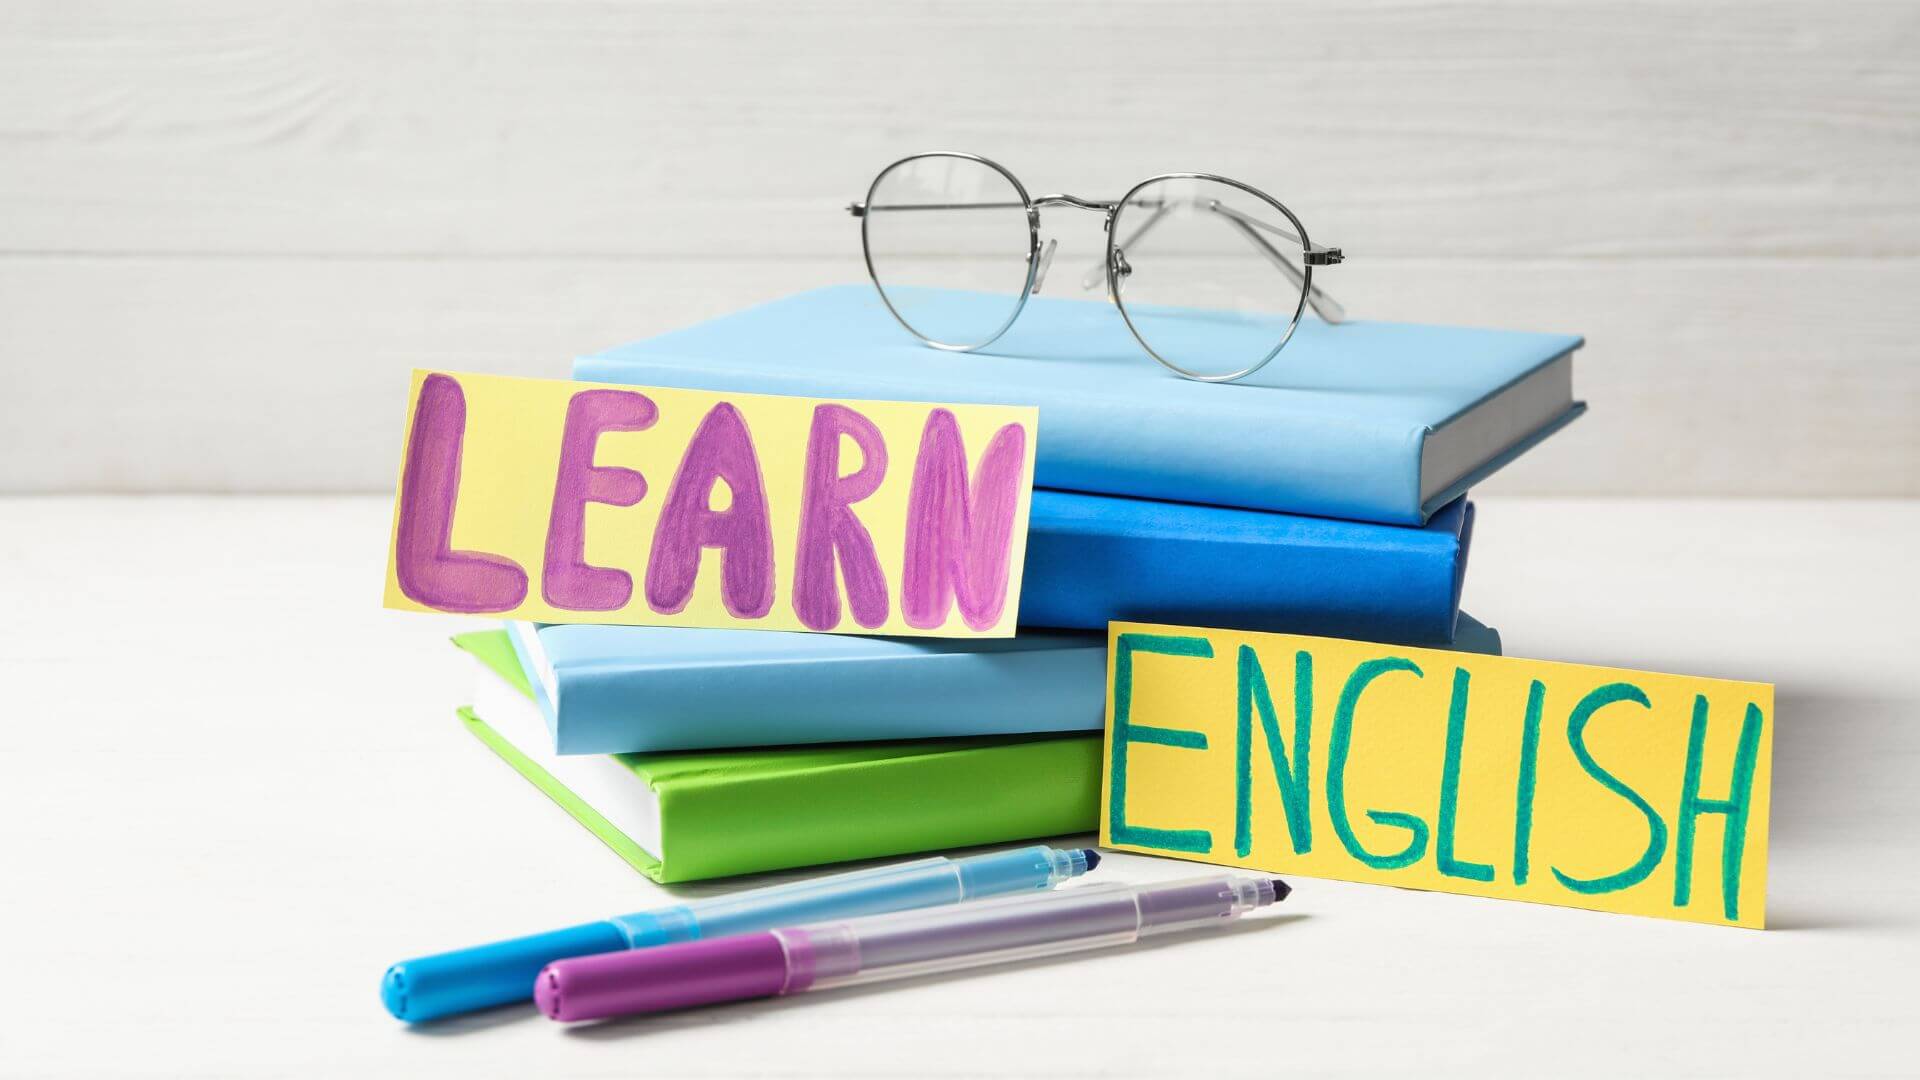 aprender inglês, aprender a falar inglês, aprender inglês, estudar inglês, aprender inglês